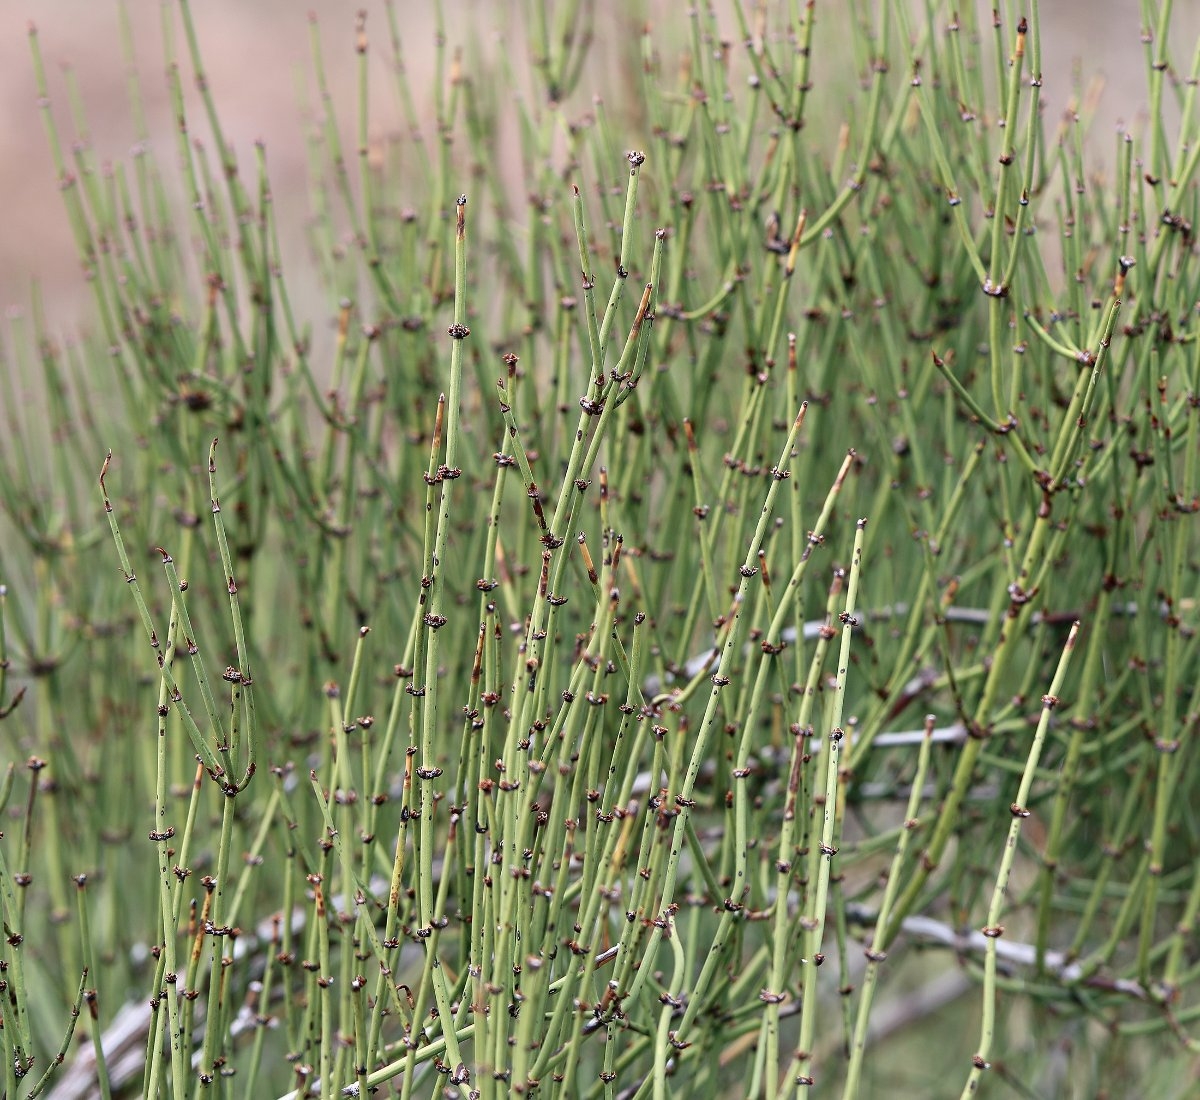 Ephedra viridis